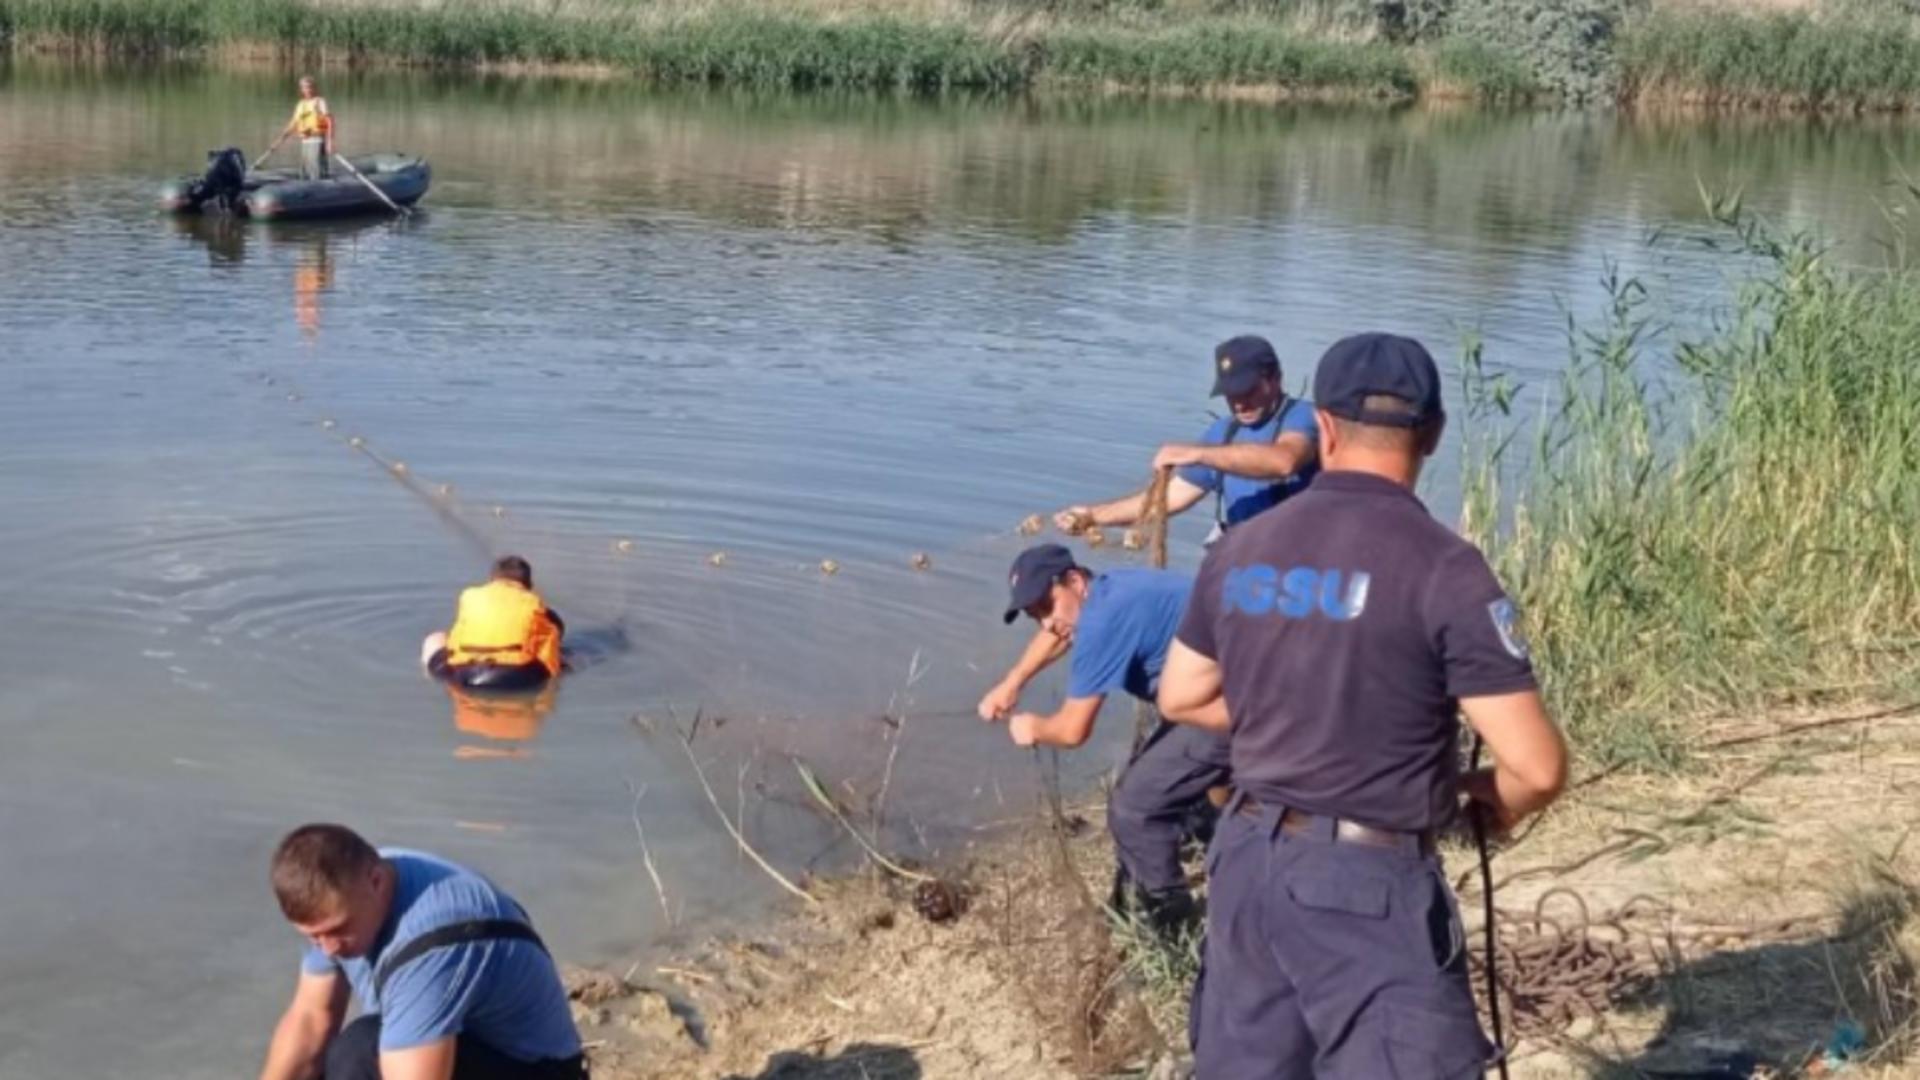 Tragedie în Republica Moldova: Un adult și 2 copii au murit înecați după ce s-au răsturnat cu barca Foto: IPN.md